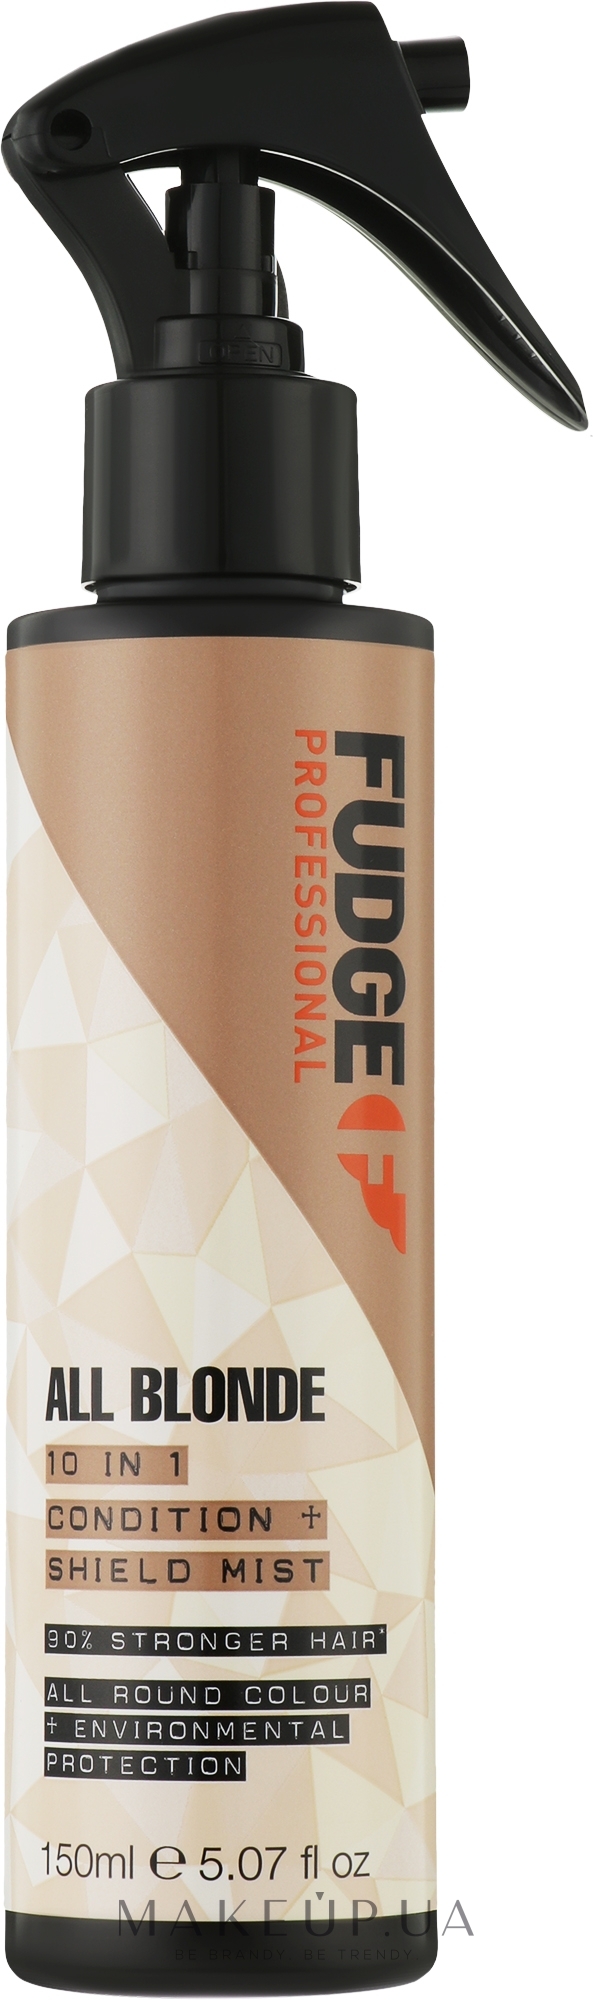 Спрей-термозащита с защитой цвета, для светлых волос - Fudge Professional All Blonde Condition And Shield Mist — фото 150ml